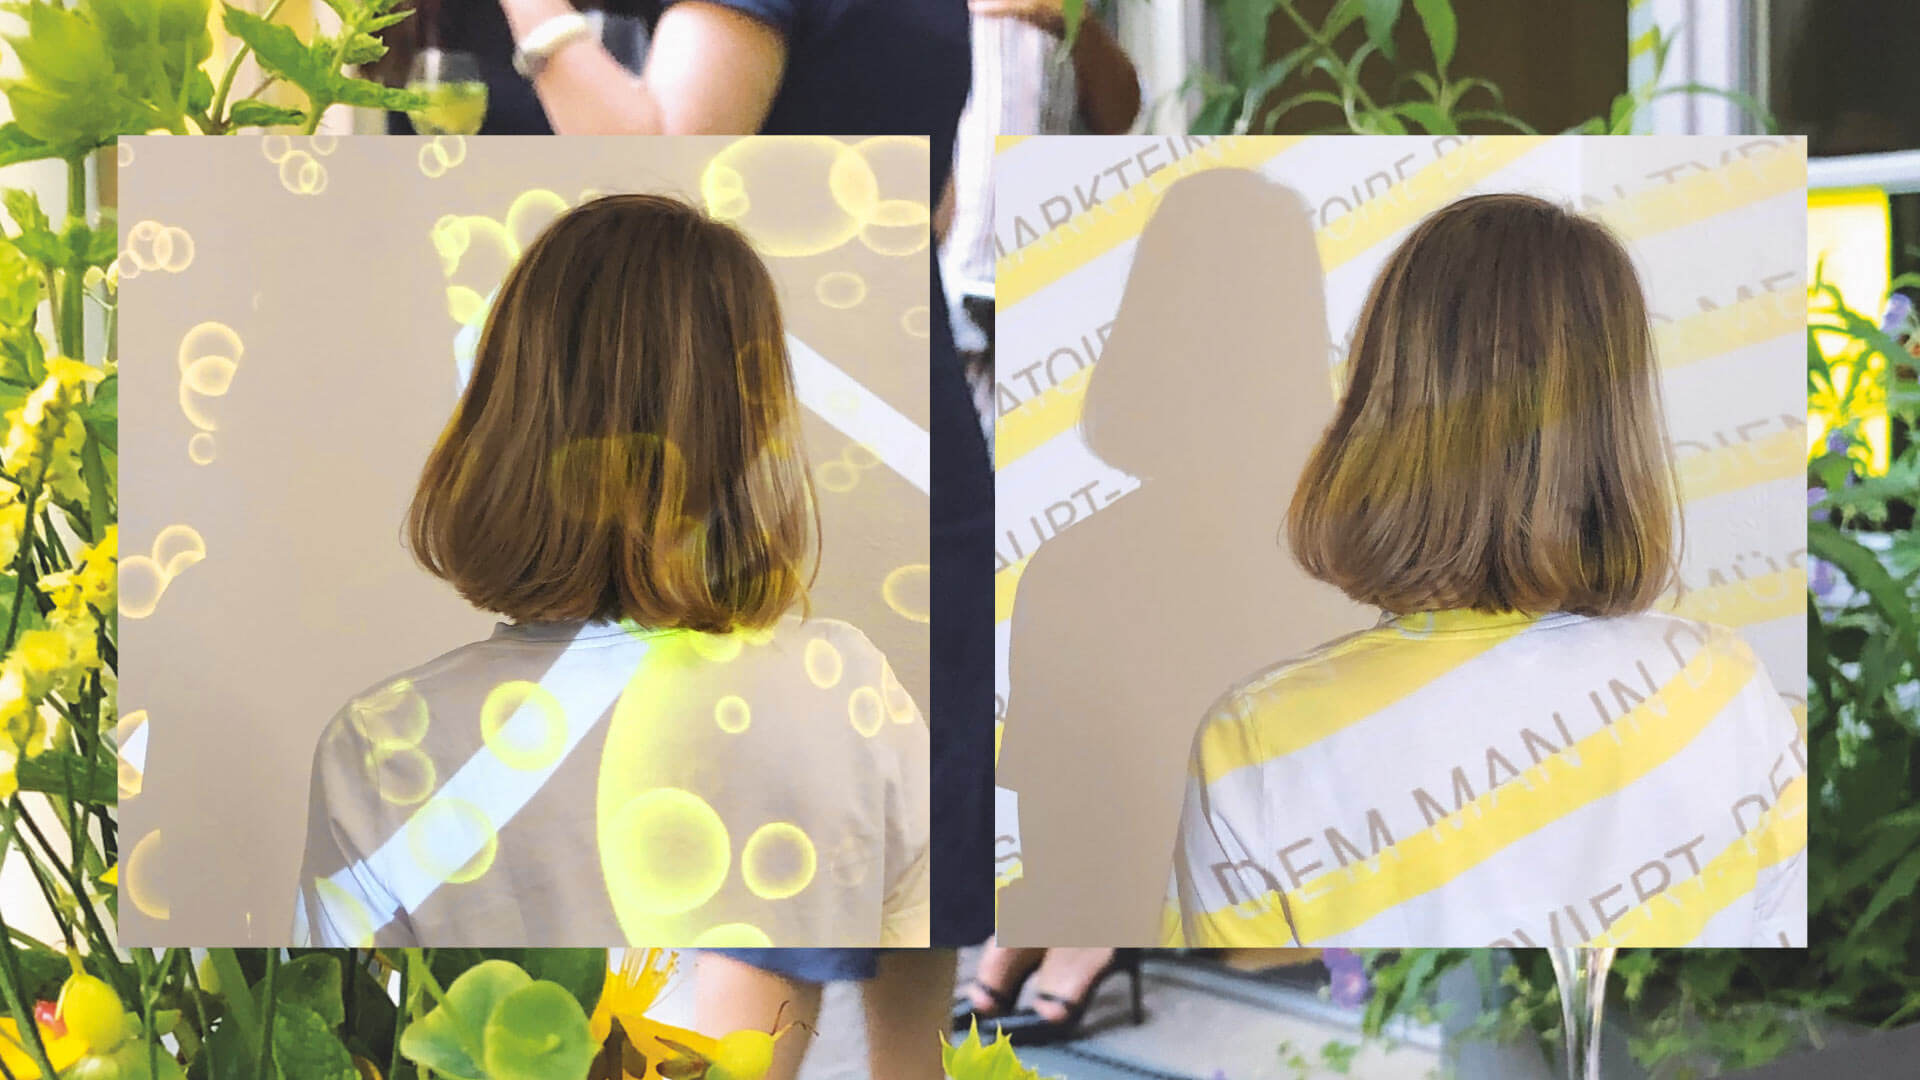 Collage im Vordergrund gelbe Blasen auf schwarzem Grund projeziert auf eine Frau daneben Typografie und gelbe Linine projeziert auf eine Frau im Hintergrund ein Foto mit unscharfen Blumen